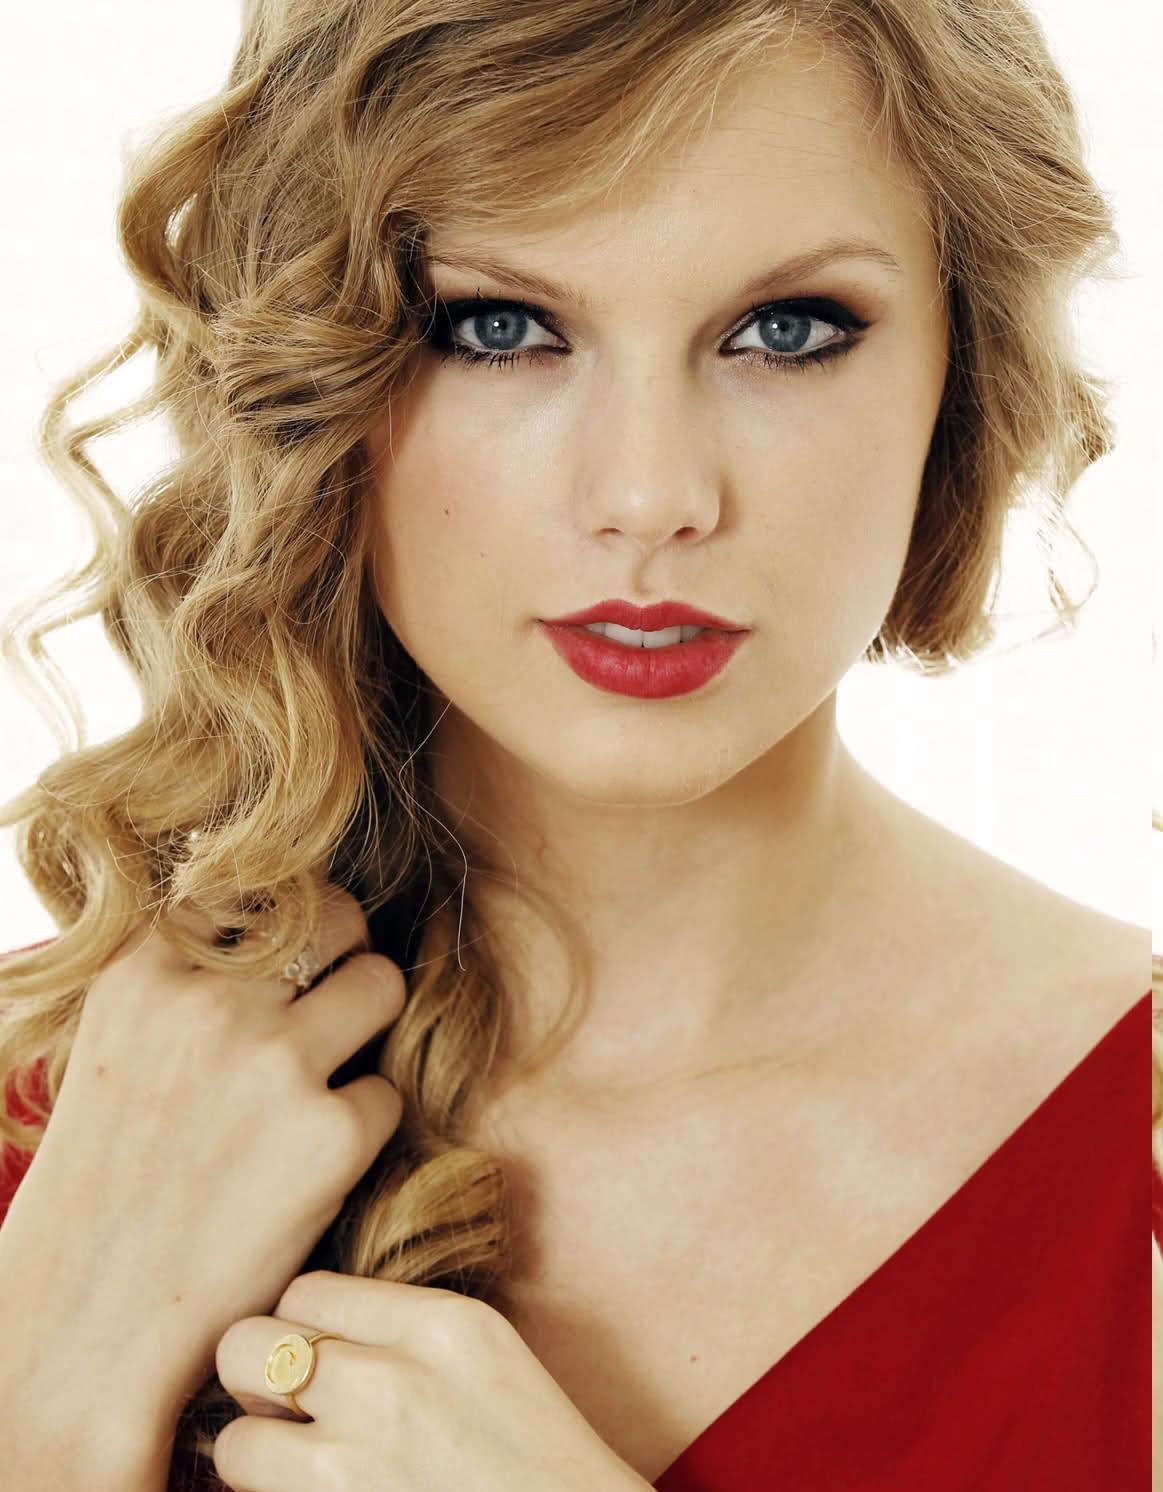 Starlight - Taylor Swift